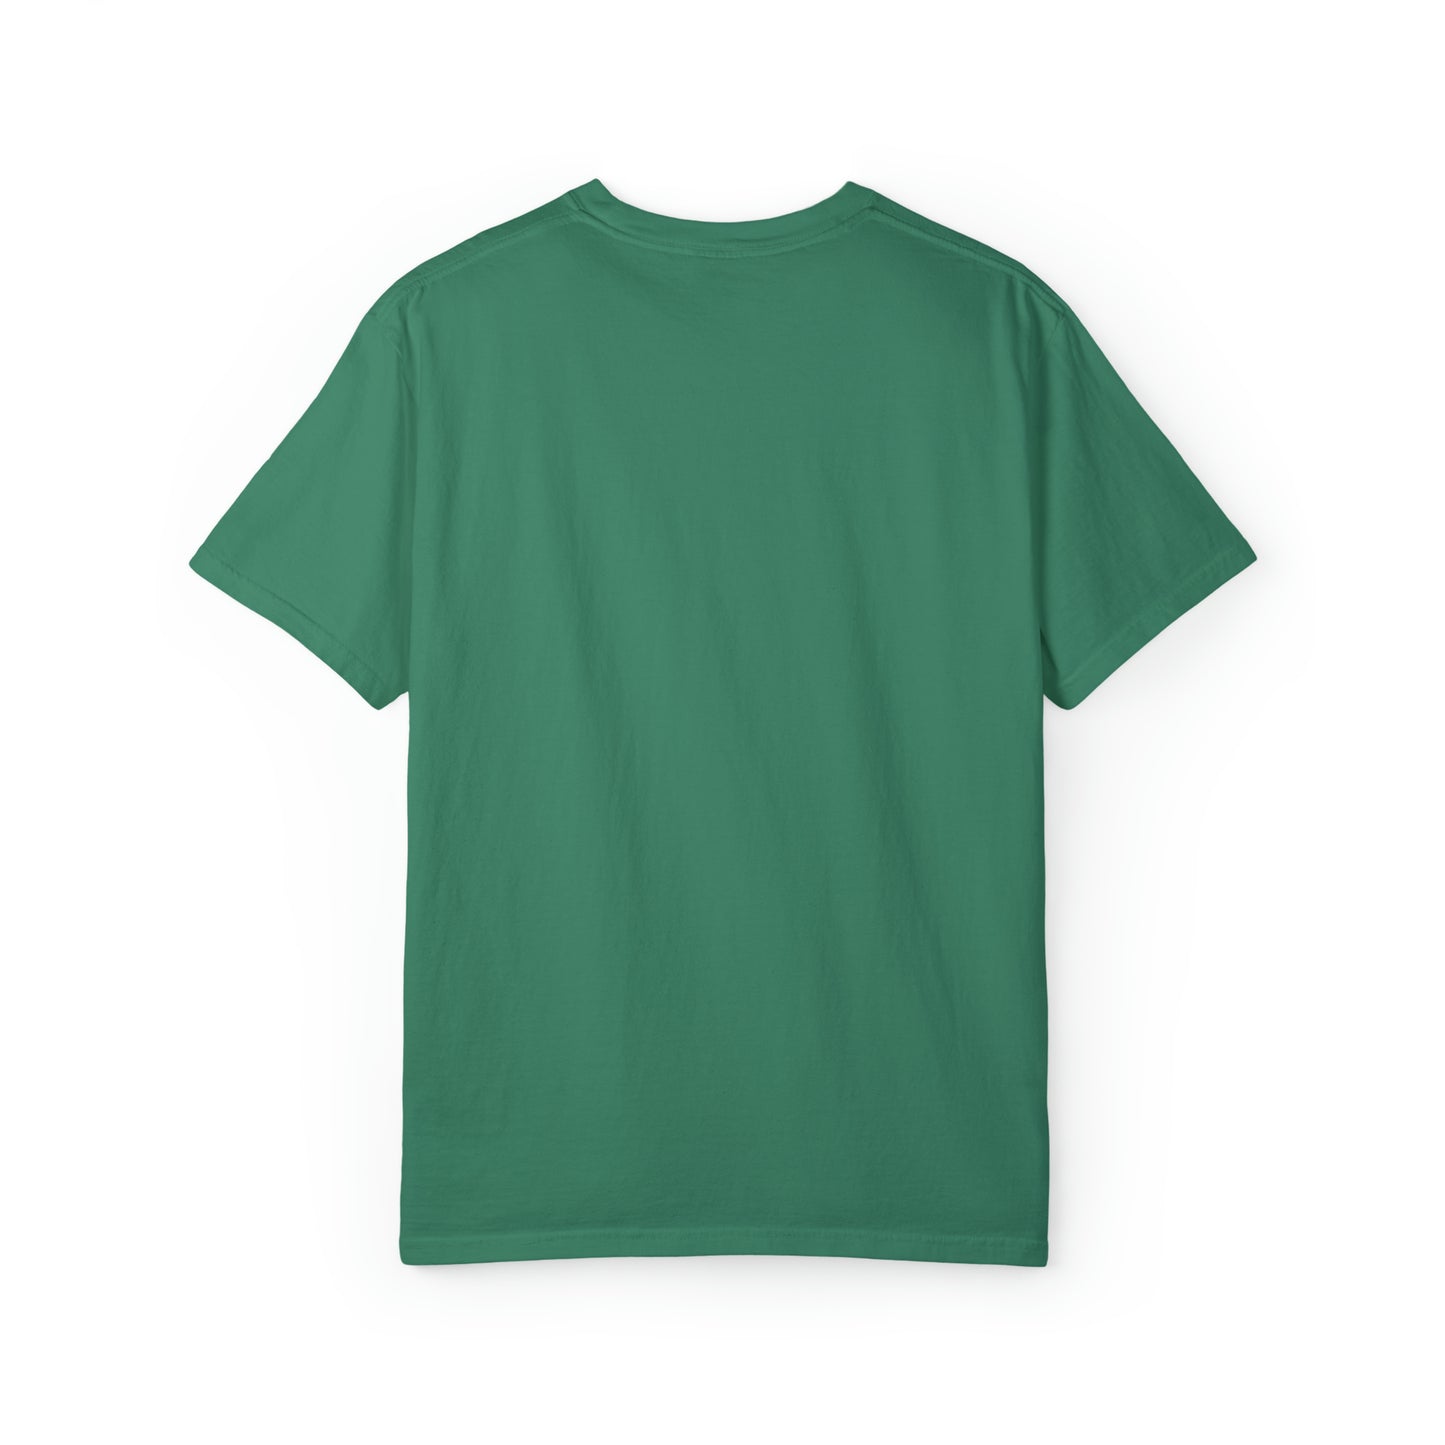 「Authentic Forties: オリジナルパーツが正常に動作するヴィンテージハット」Tシャツ